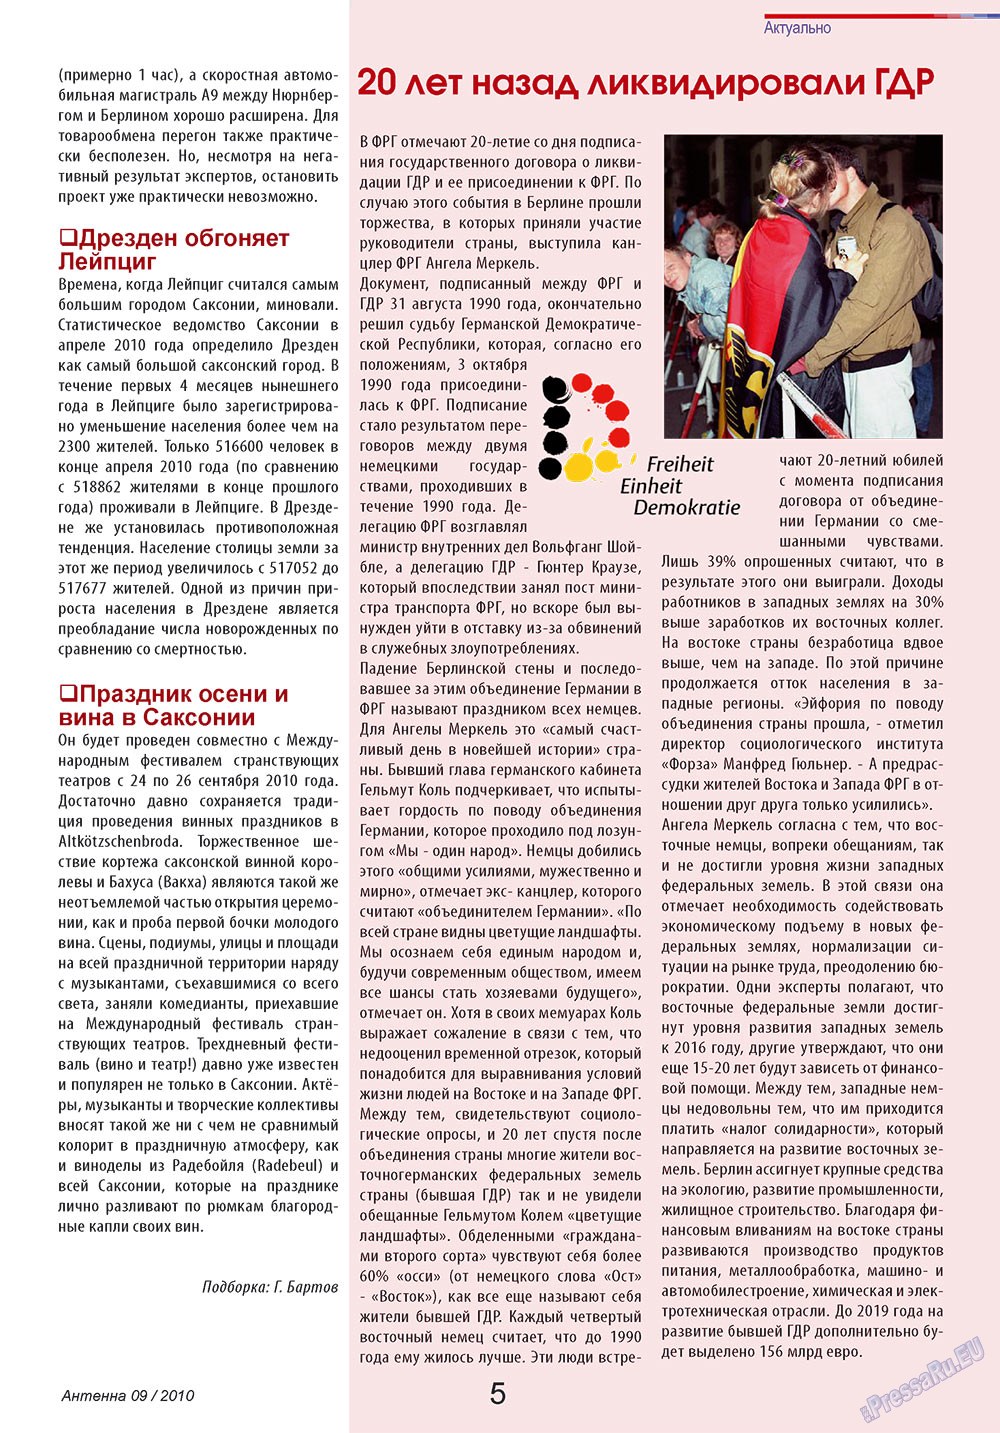 Антенна, журнал. 2010 №9 стр.5